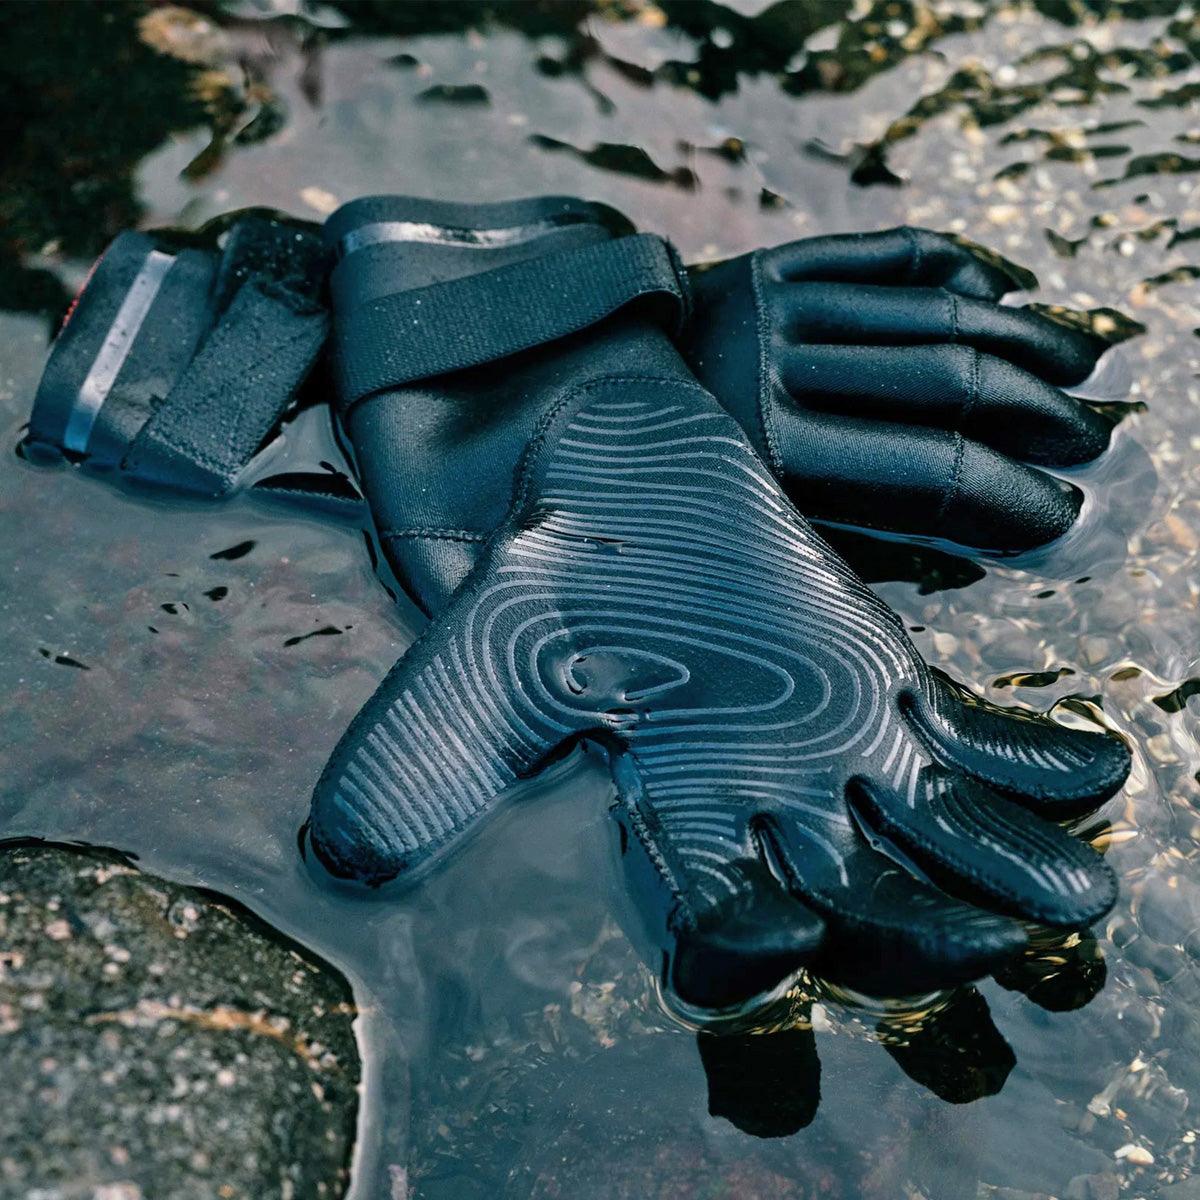 Mystic Roam 3mm Neoprene Gloves - Kiteshop.com